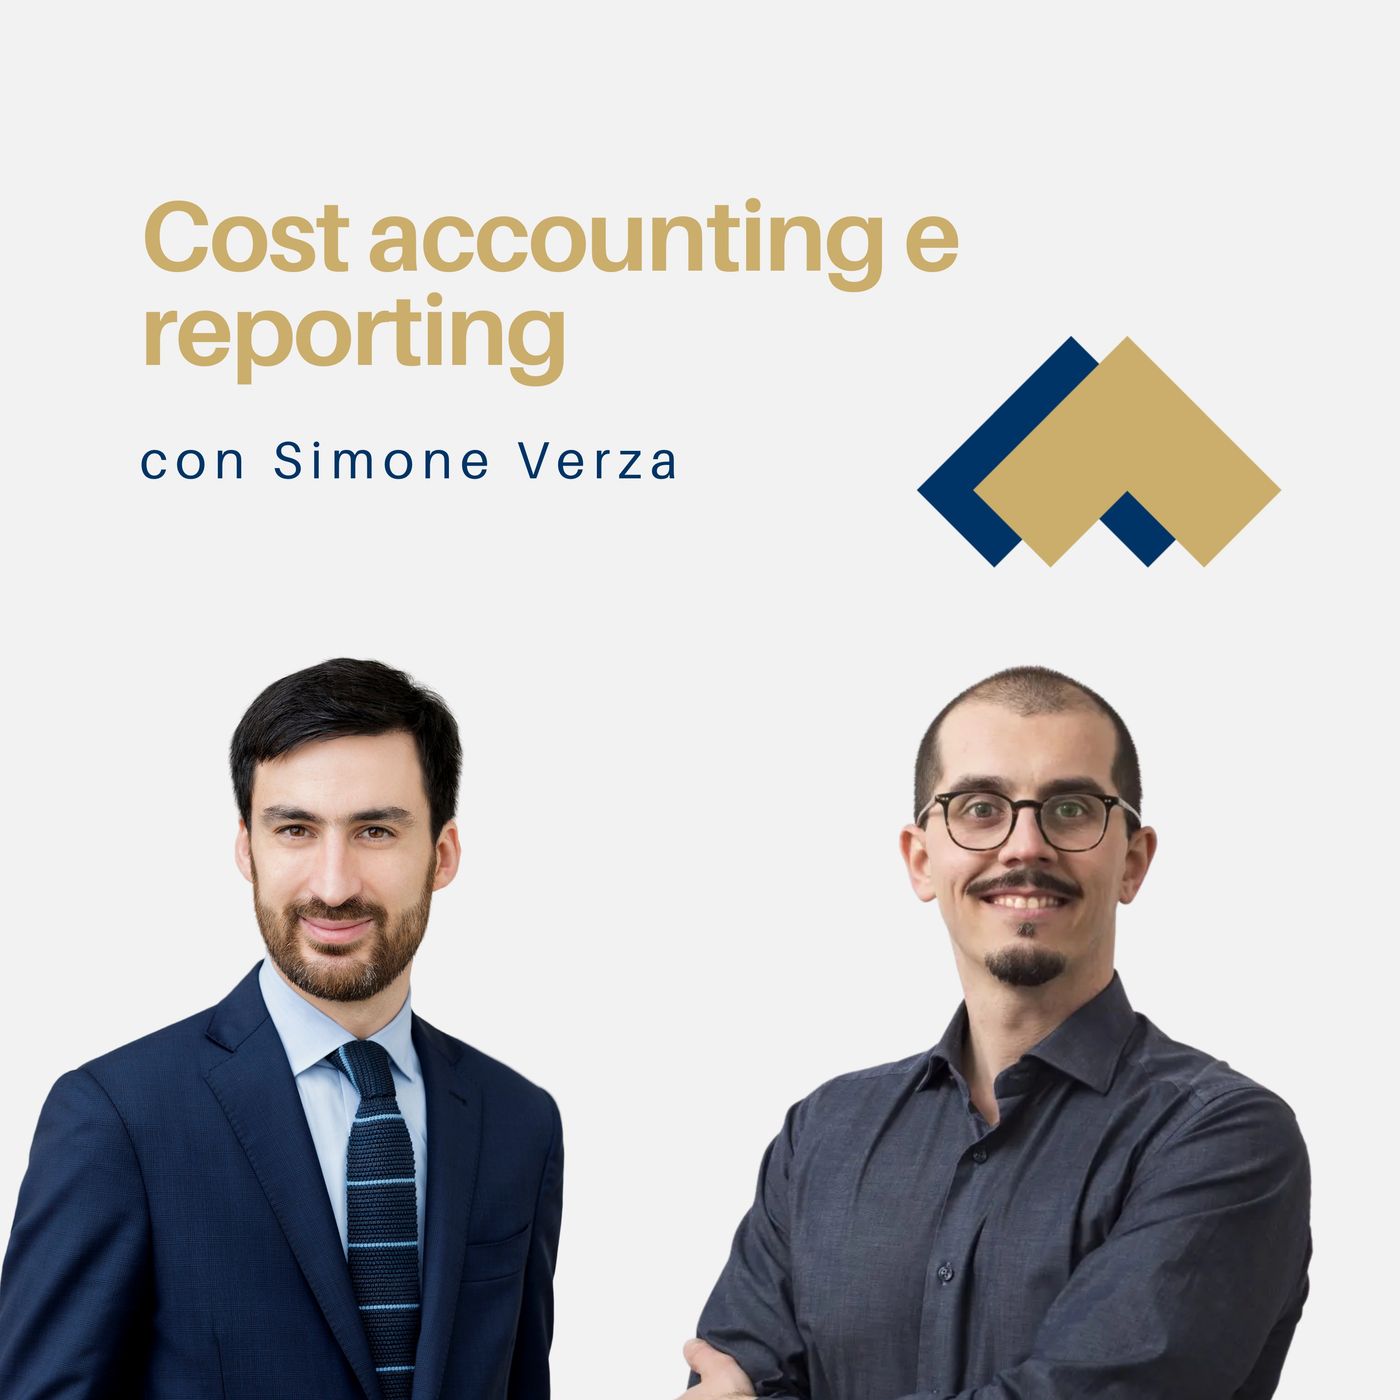 075 - Cost accounting e reporting con Simone Verza